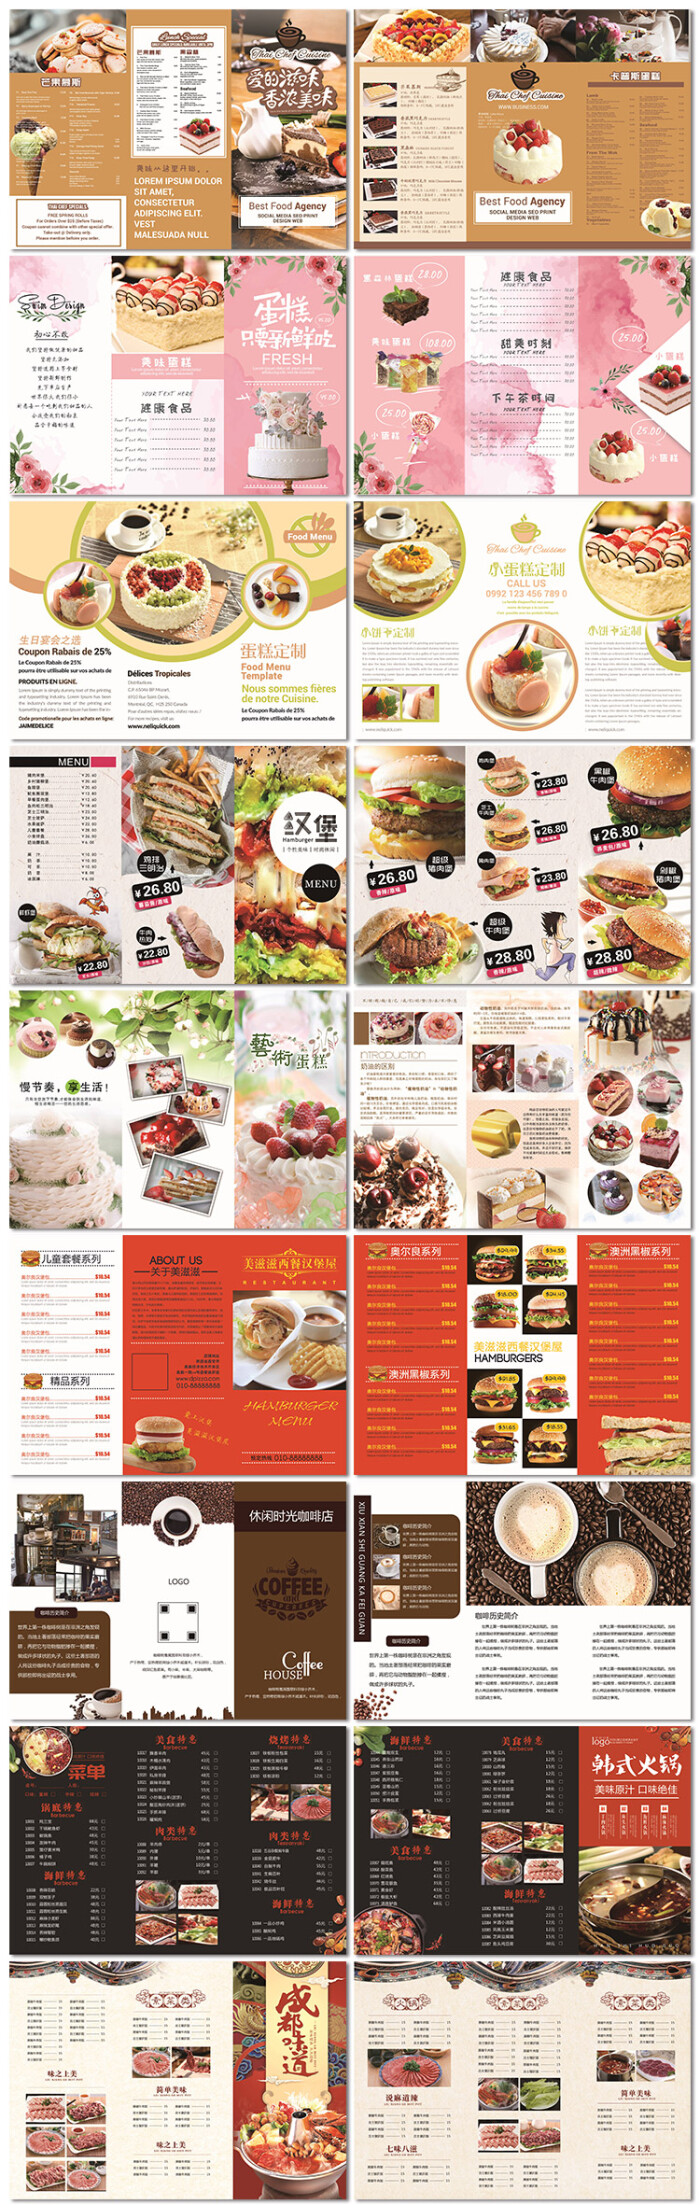 美食餐厅汉堡咖啡厅甜品蛋糕店三折页传单海报设计psd模板素材